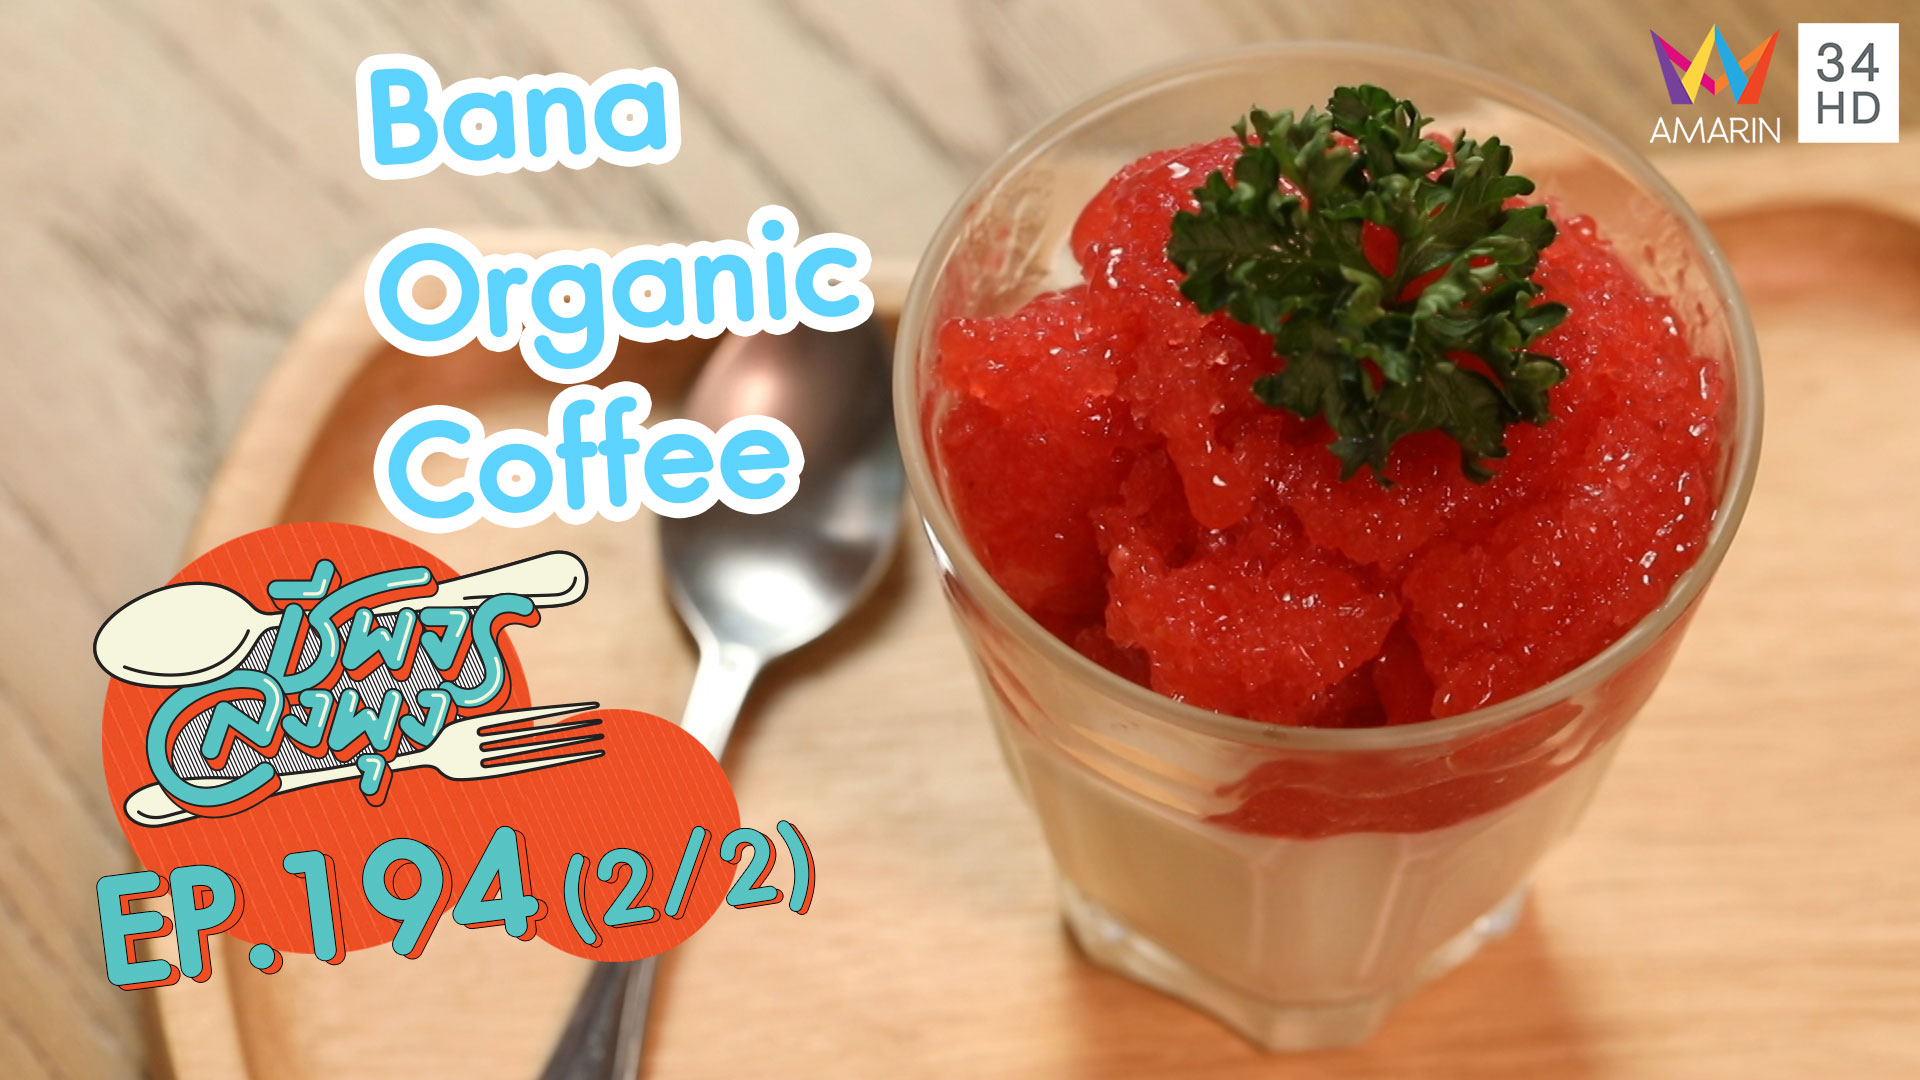 ชีพจรลงพุง ซีซั่น 5 | กินดีเพื่อสุขภาพ 'ร้านBana Organic Coffee' | 2 ก.พ.63 (2/2)